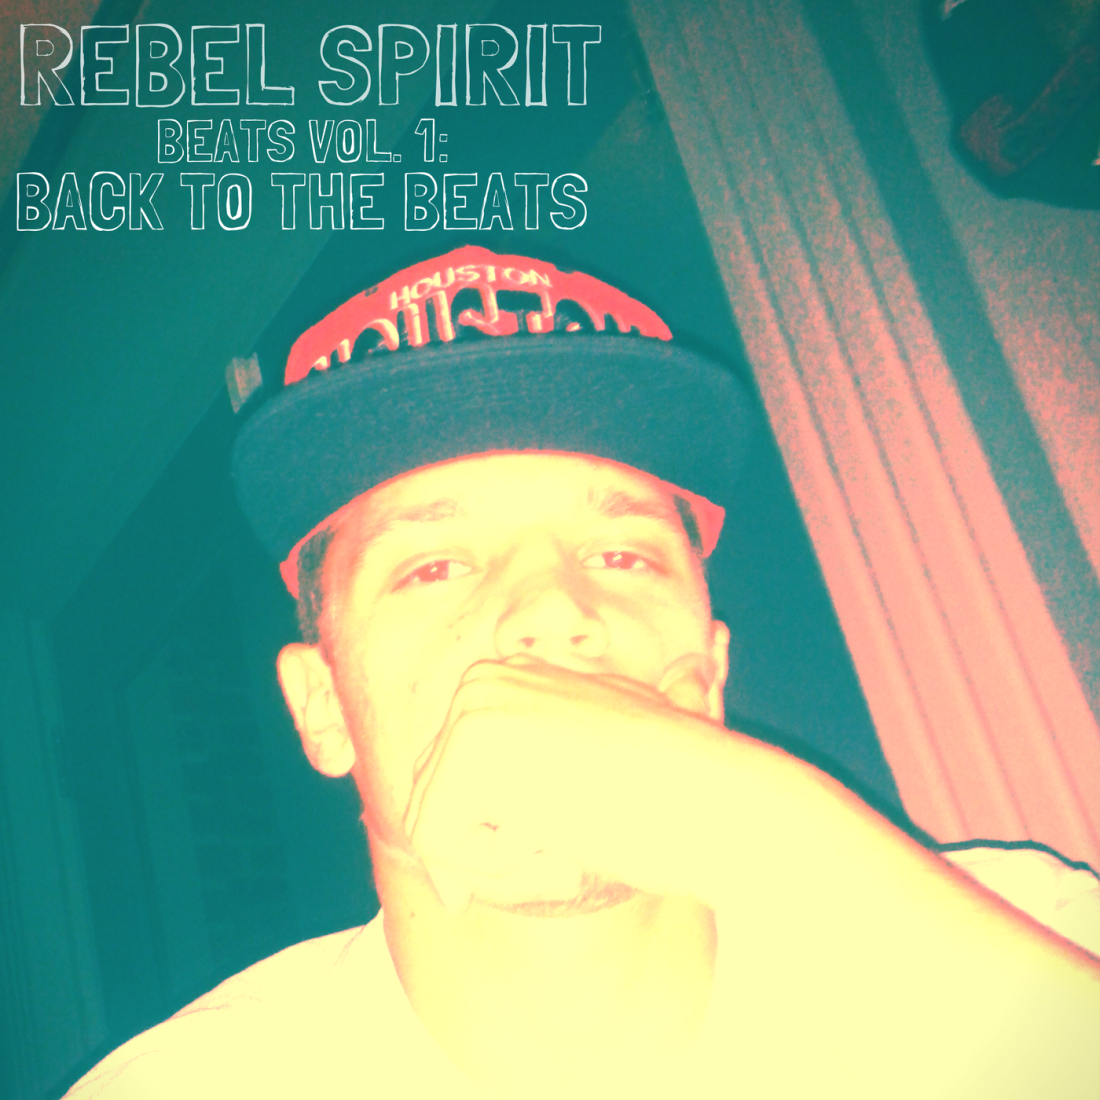 REBEL SPIRIT BEATS VOL. 1 (1).png